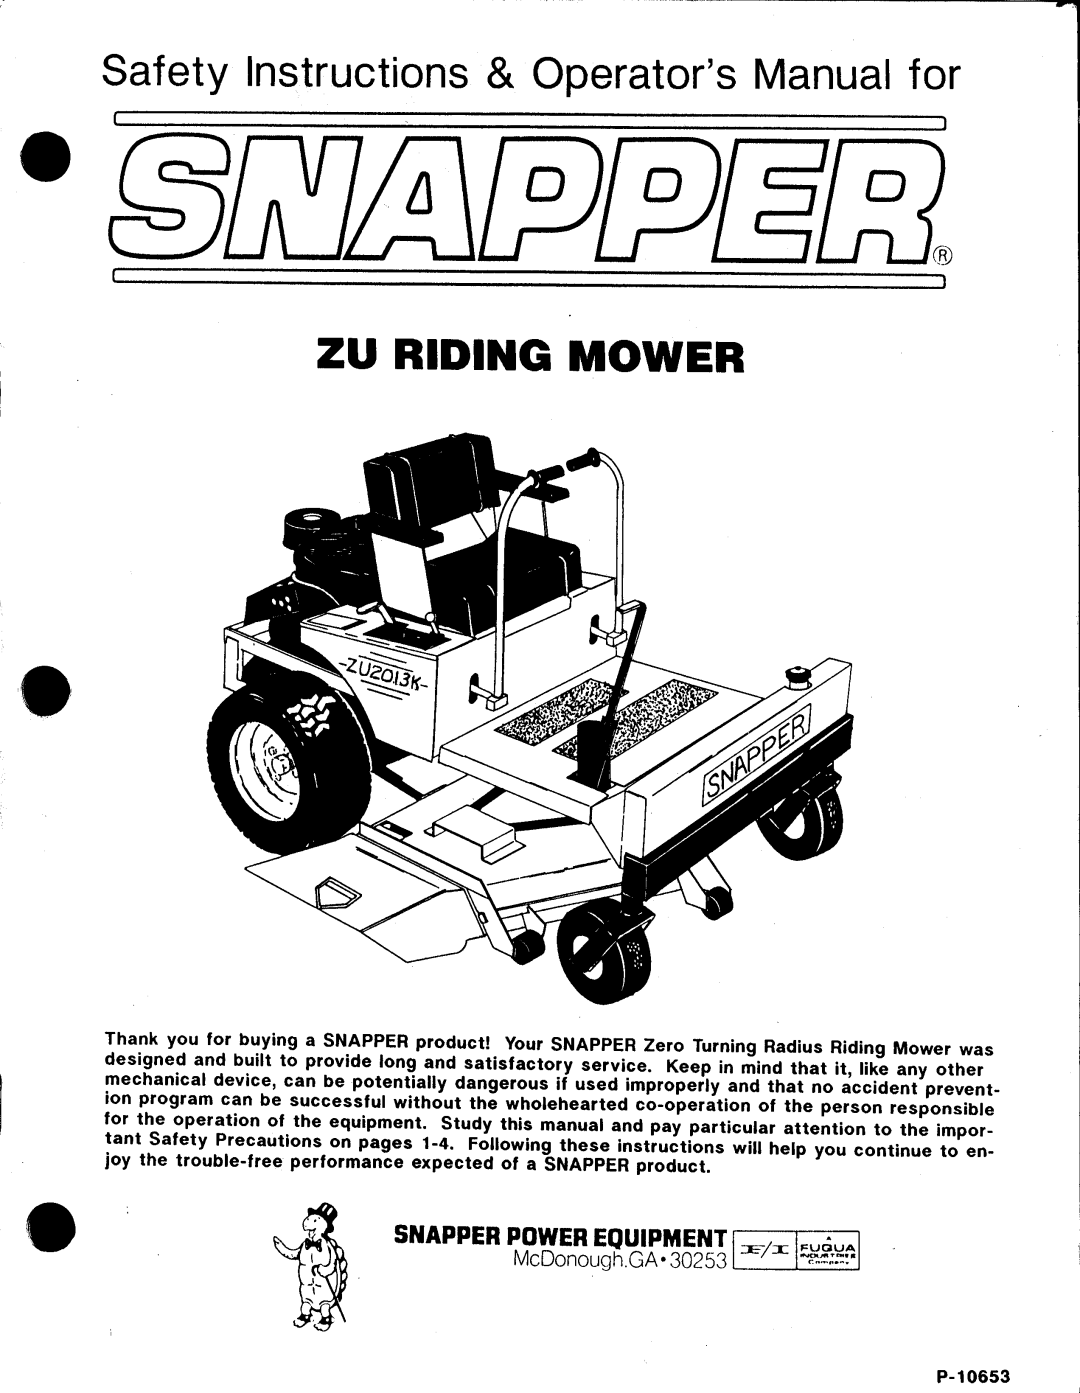 Snapper P-10653 manual 